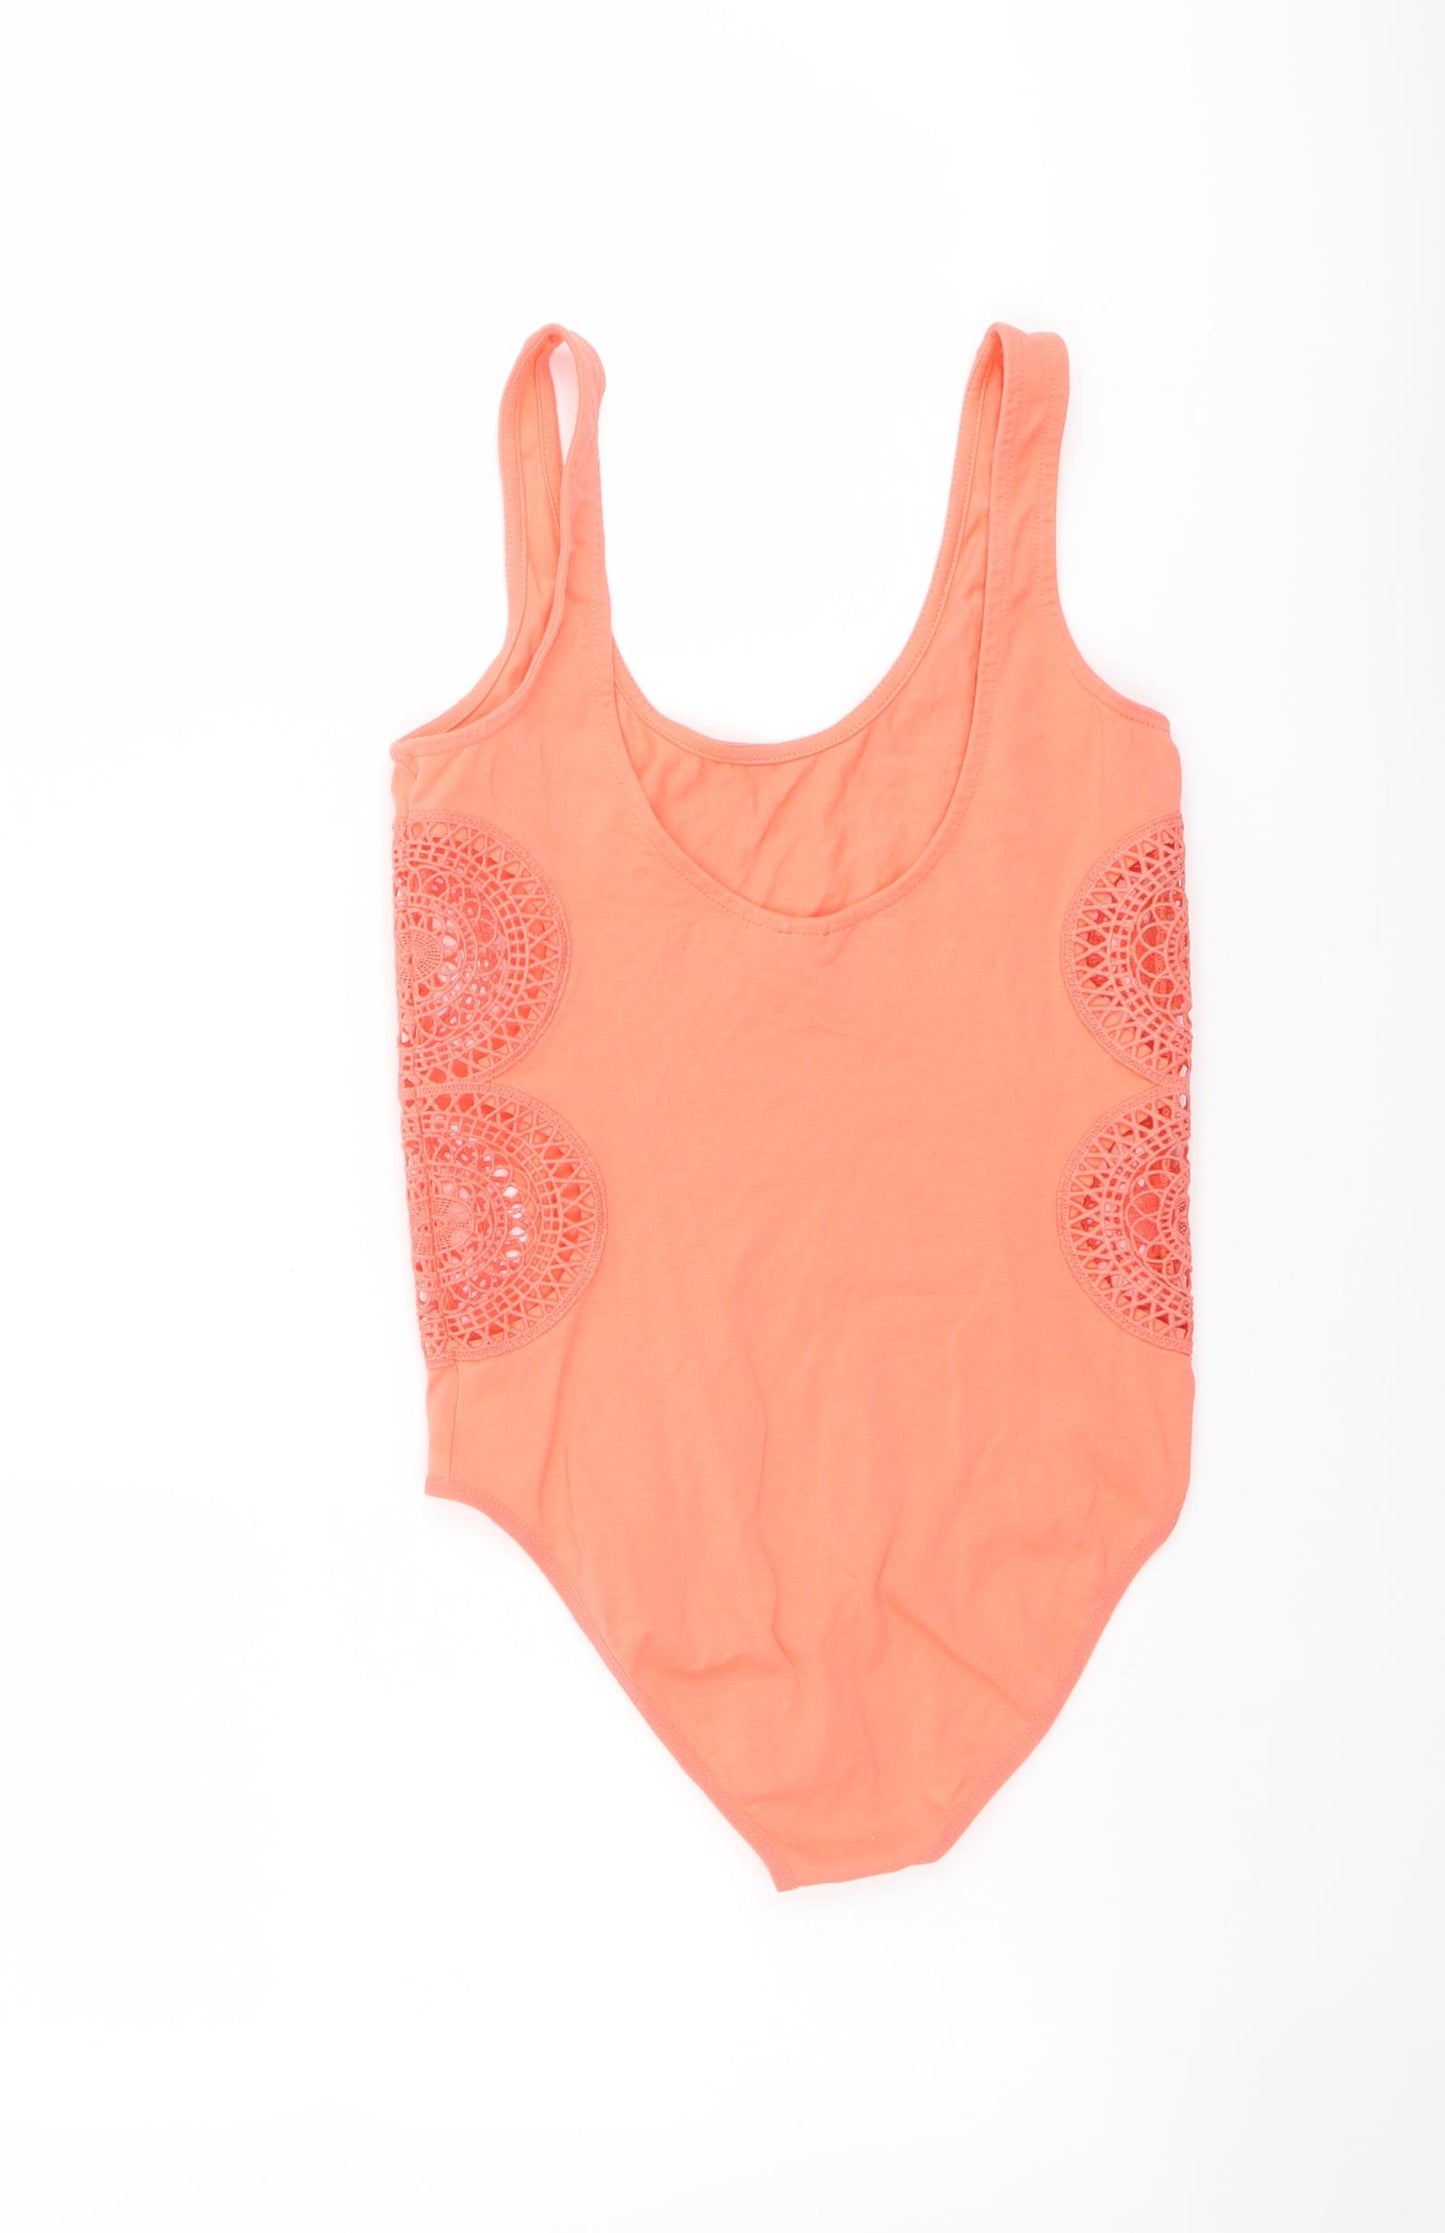 Topshop Womens Orange Cotton Playsuit One-Piece Size 8 Snap - Cut Out Lace Side